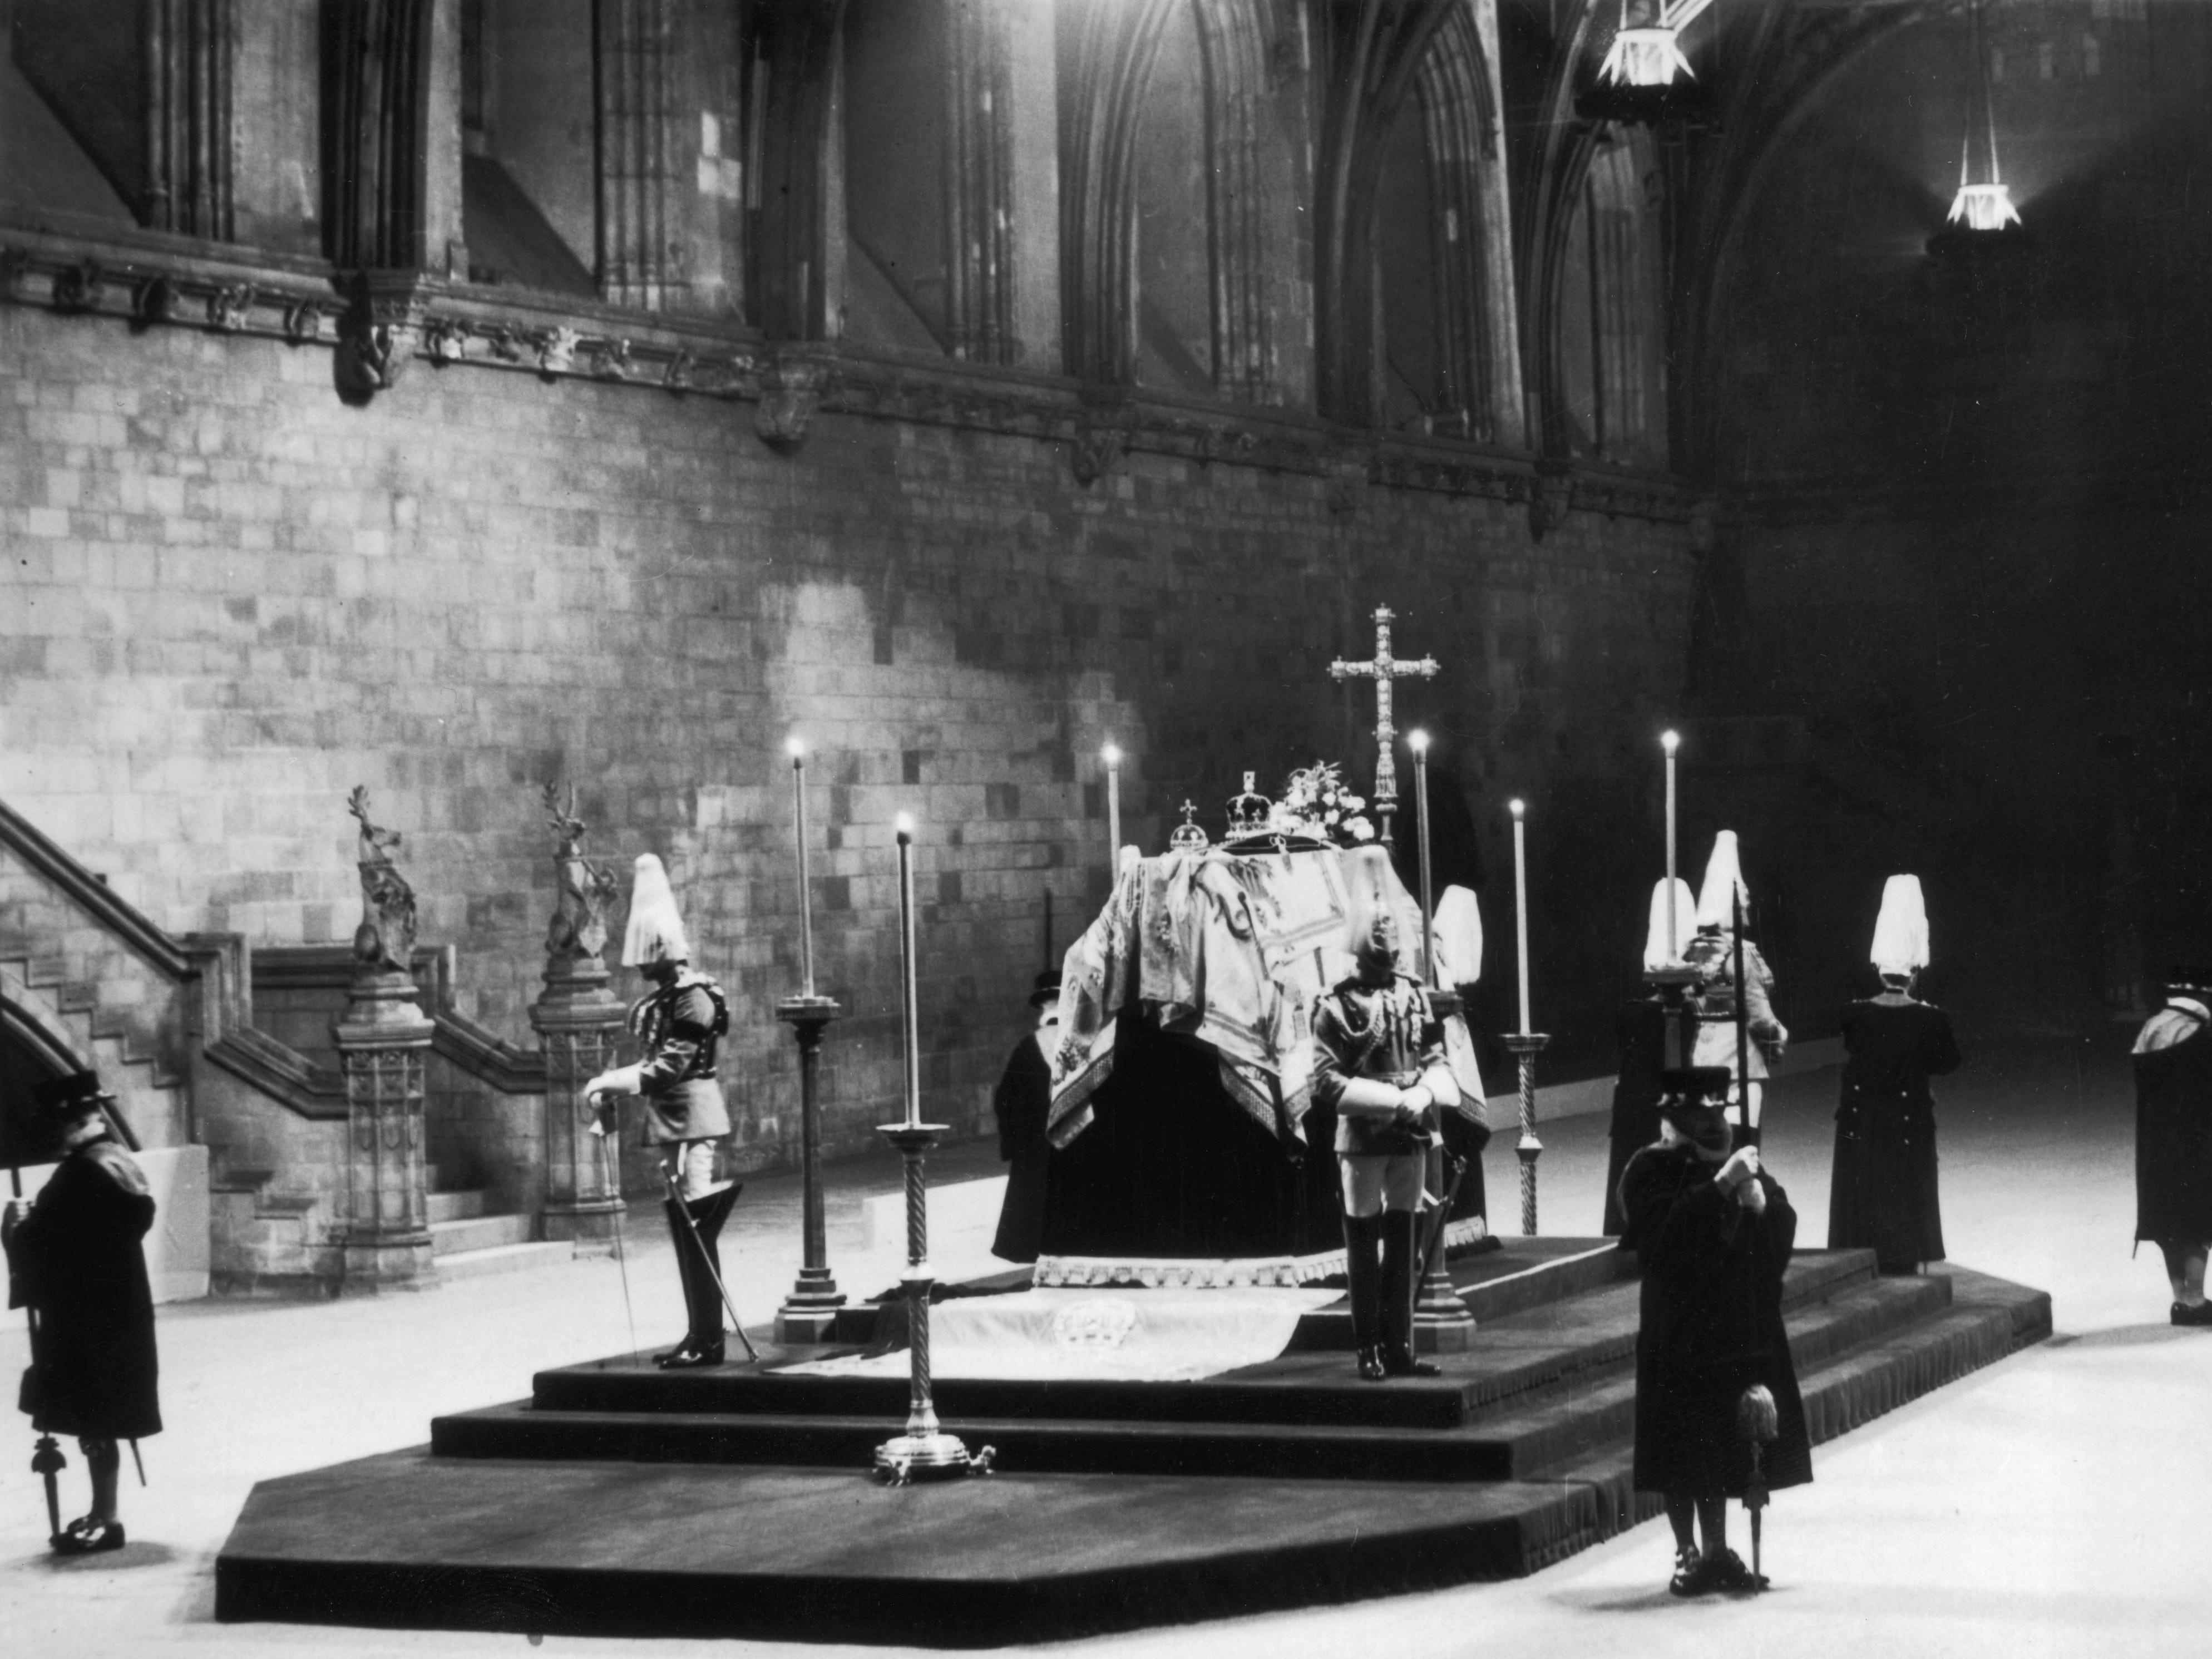 Wachen stehen um den Sarg von König George V herum, während er aufgebahrt ist.